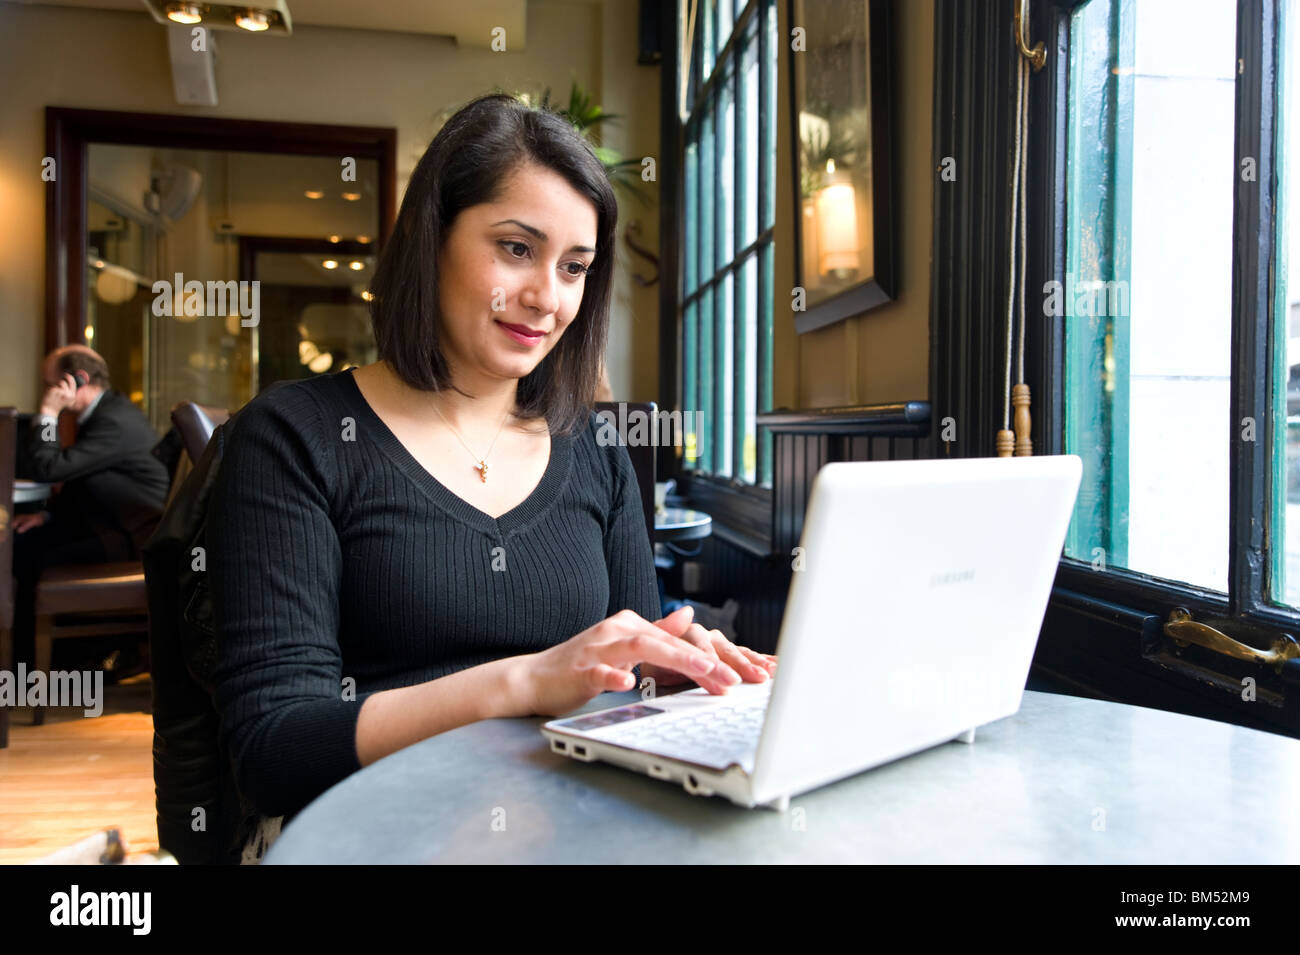 Junge Frau, die das Surfen im Internet im Café, England, UK Stockfoto